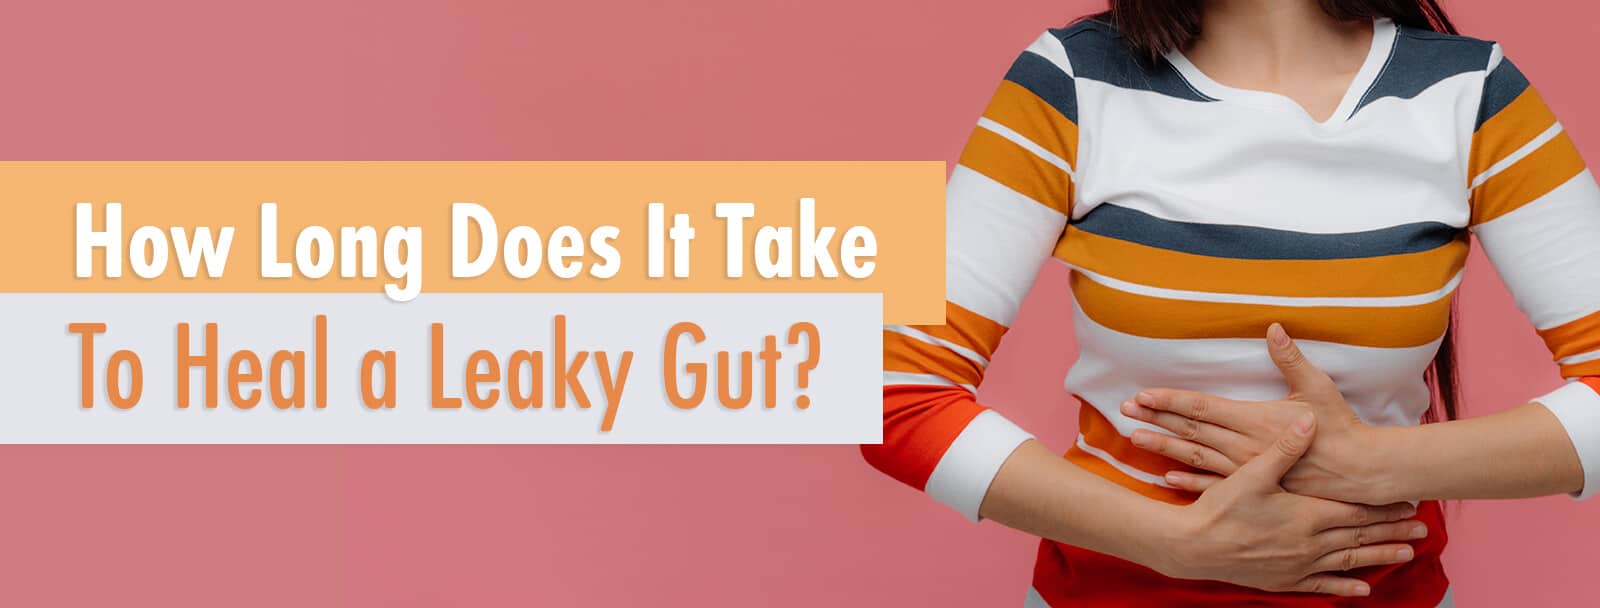 heal leaky gut in 2 weeks